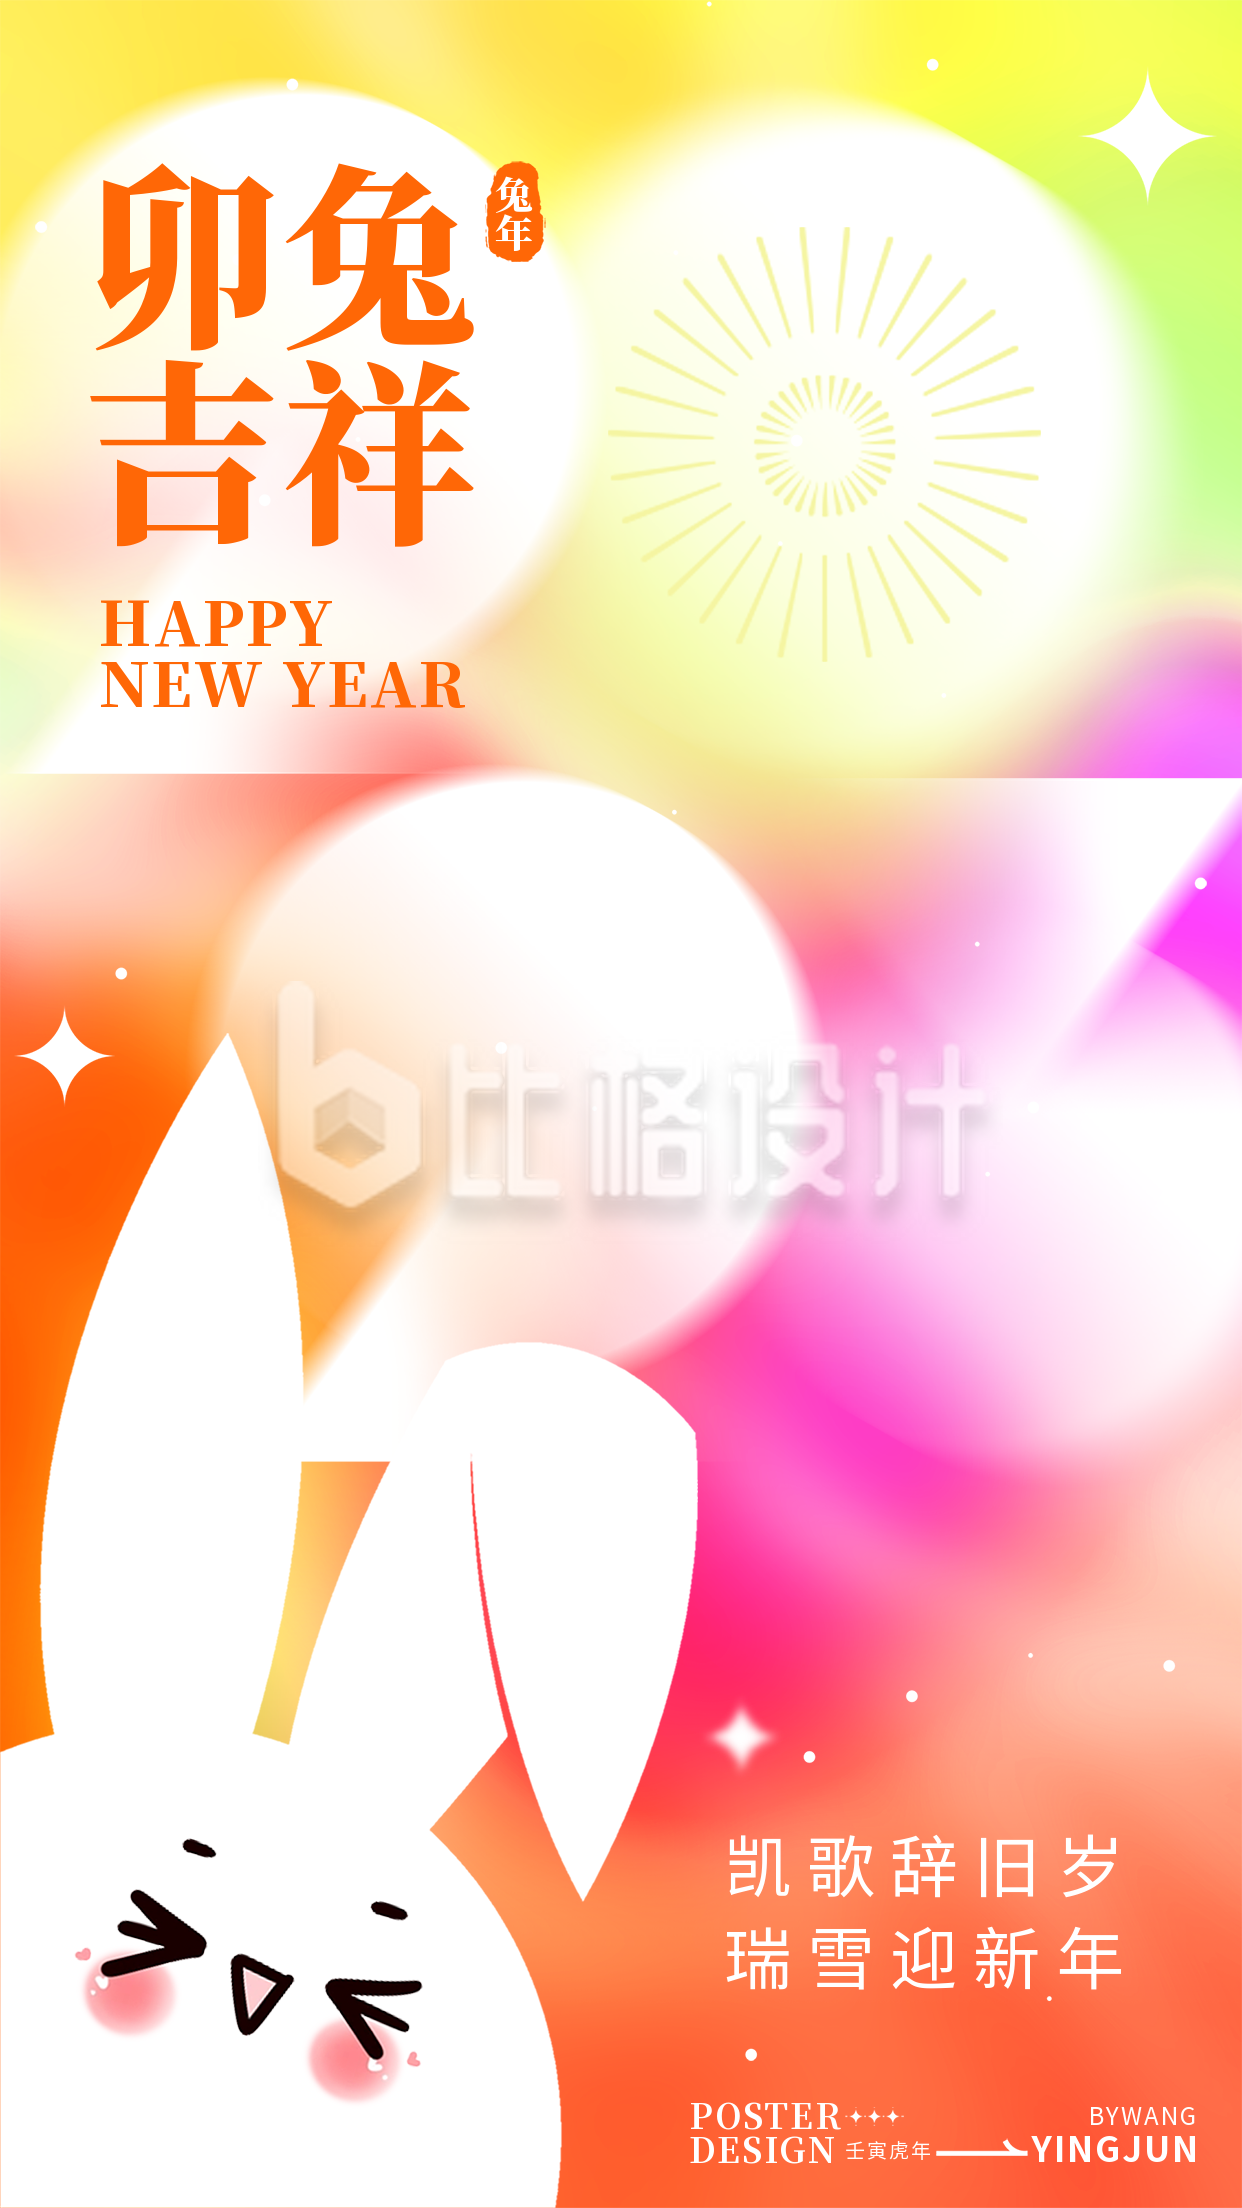 橙色喜庆兔年新年祝福语手机海报